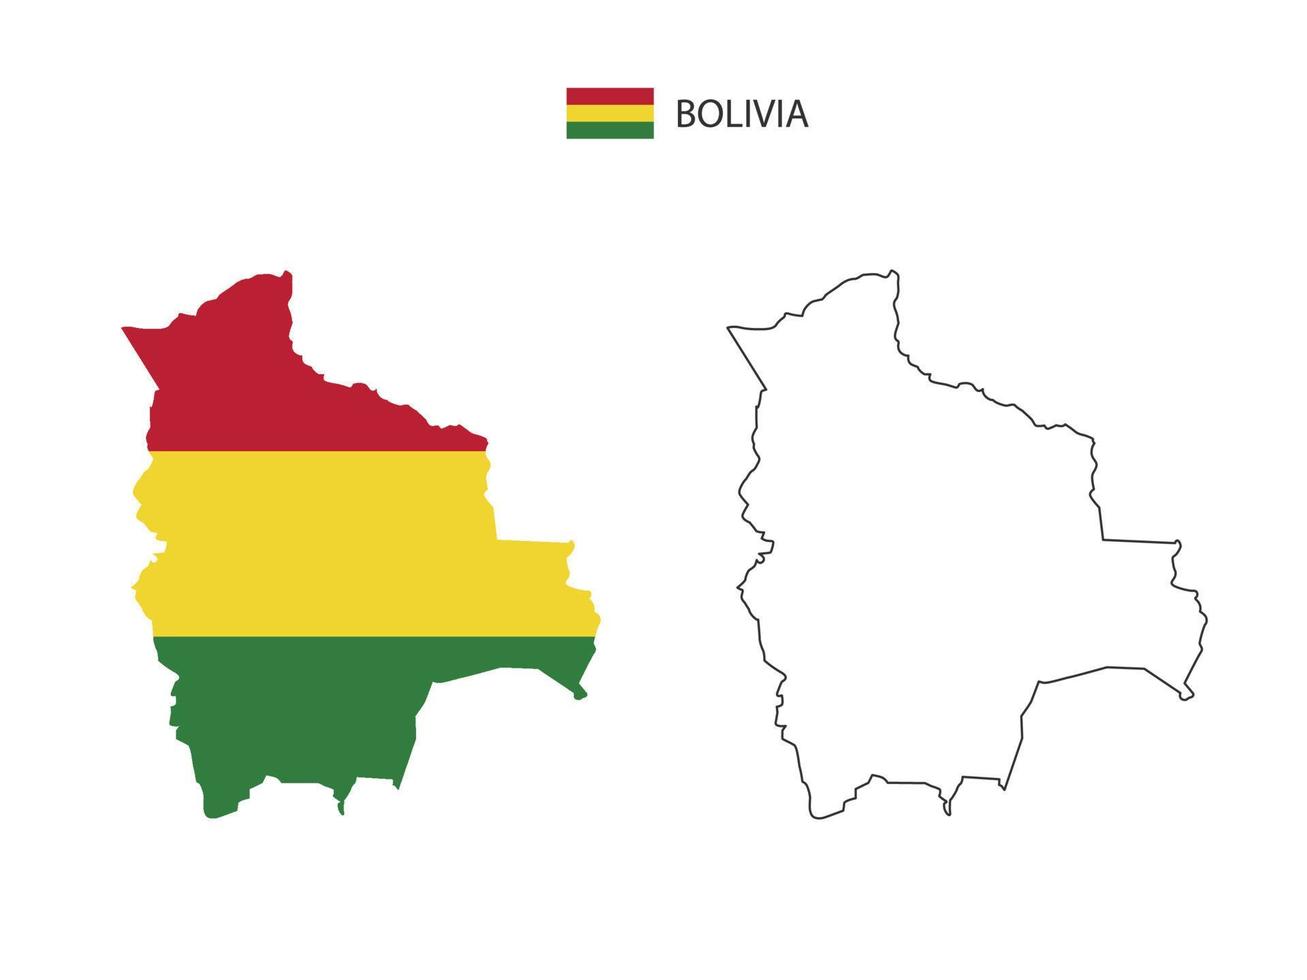 Bolivia kaart stad vector verdeeld door schets eenvoud stijl. hebben 2 versies, zwart dun lijn versie en kleur van land vlag versie. beide kaart waren Aan de wit achtergrond.